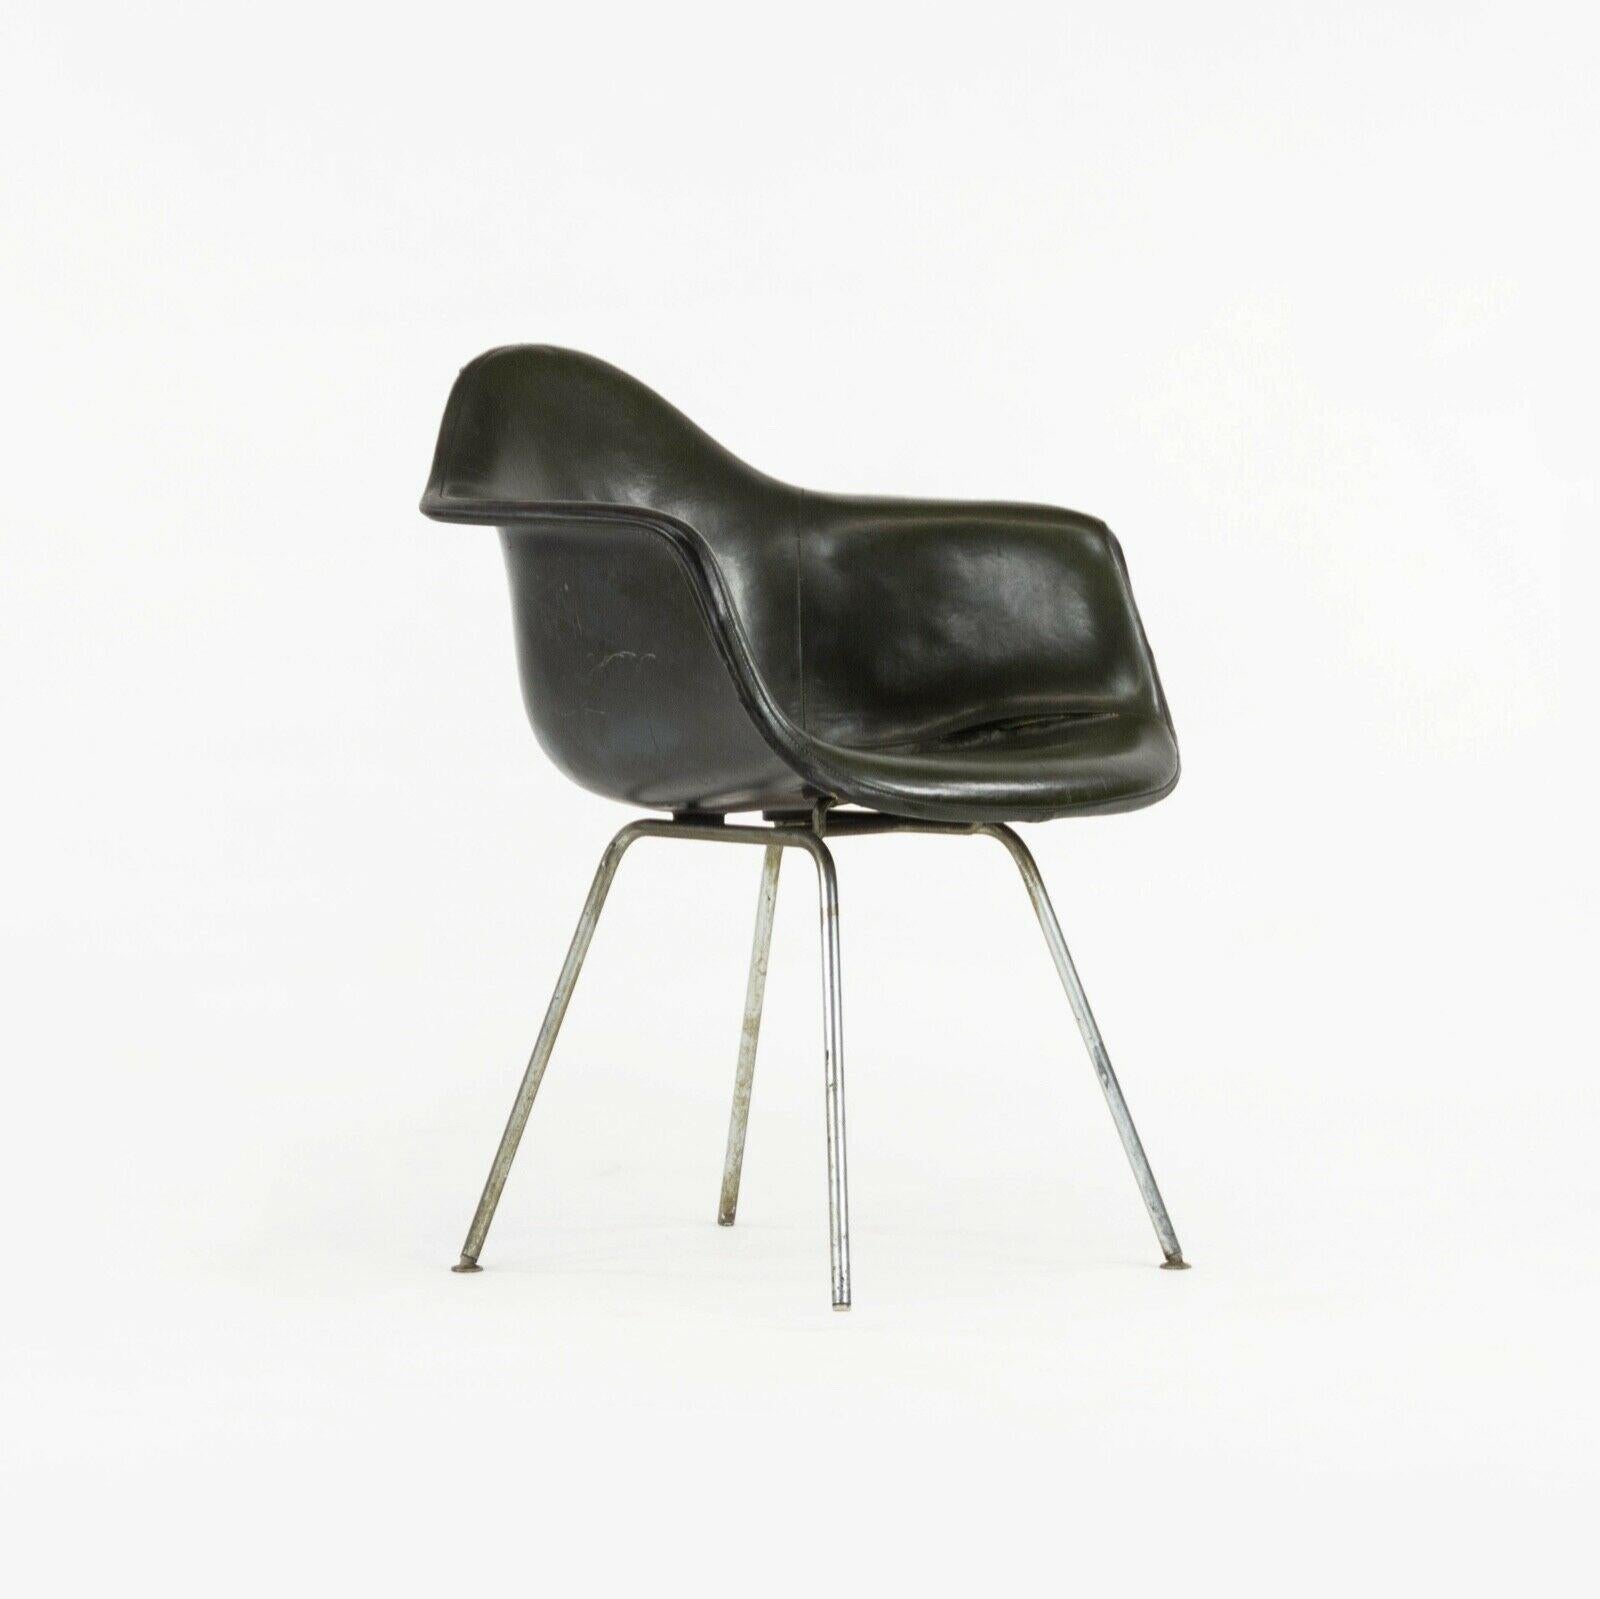 Zum Verkauf steht ein circa 1959 produzierter Herman Miller Eames DAX Ess- und Beistellstuhl mit dunkelgrünem, abnehmbarem Pad aus Naugahyde und Fiberglasschale (mit lackierter Rückenlehne). Der DAX ist ein ikonischer Entwurf von Ray und Charles